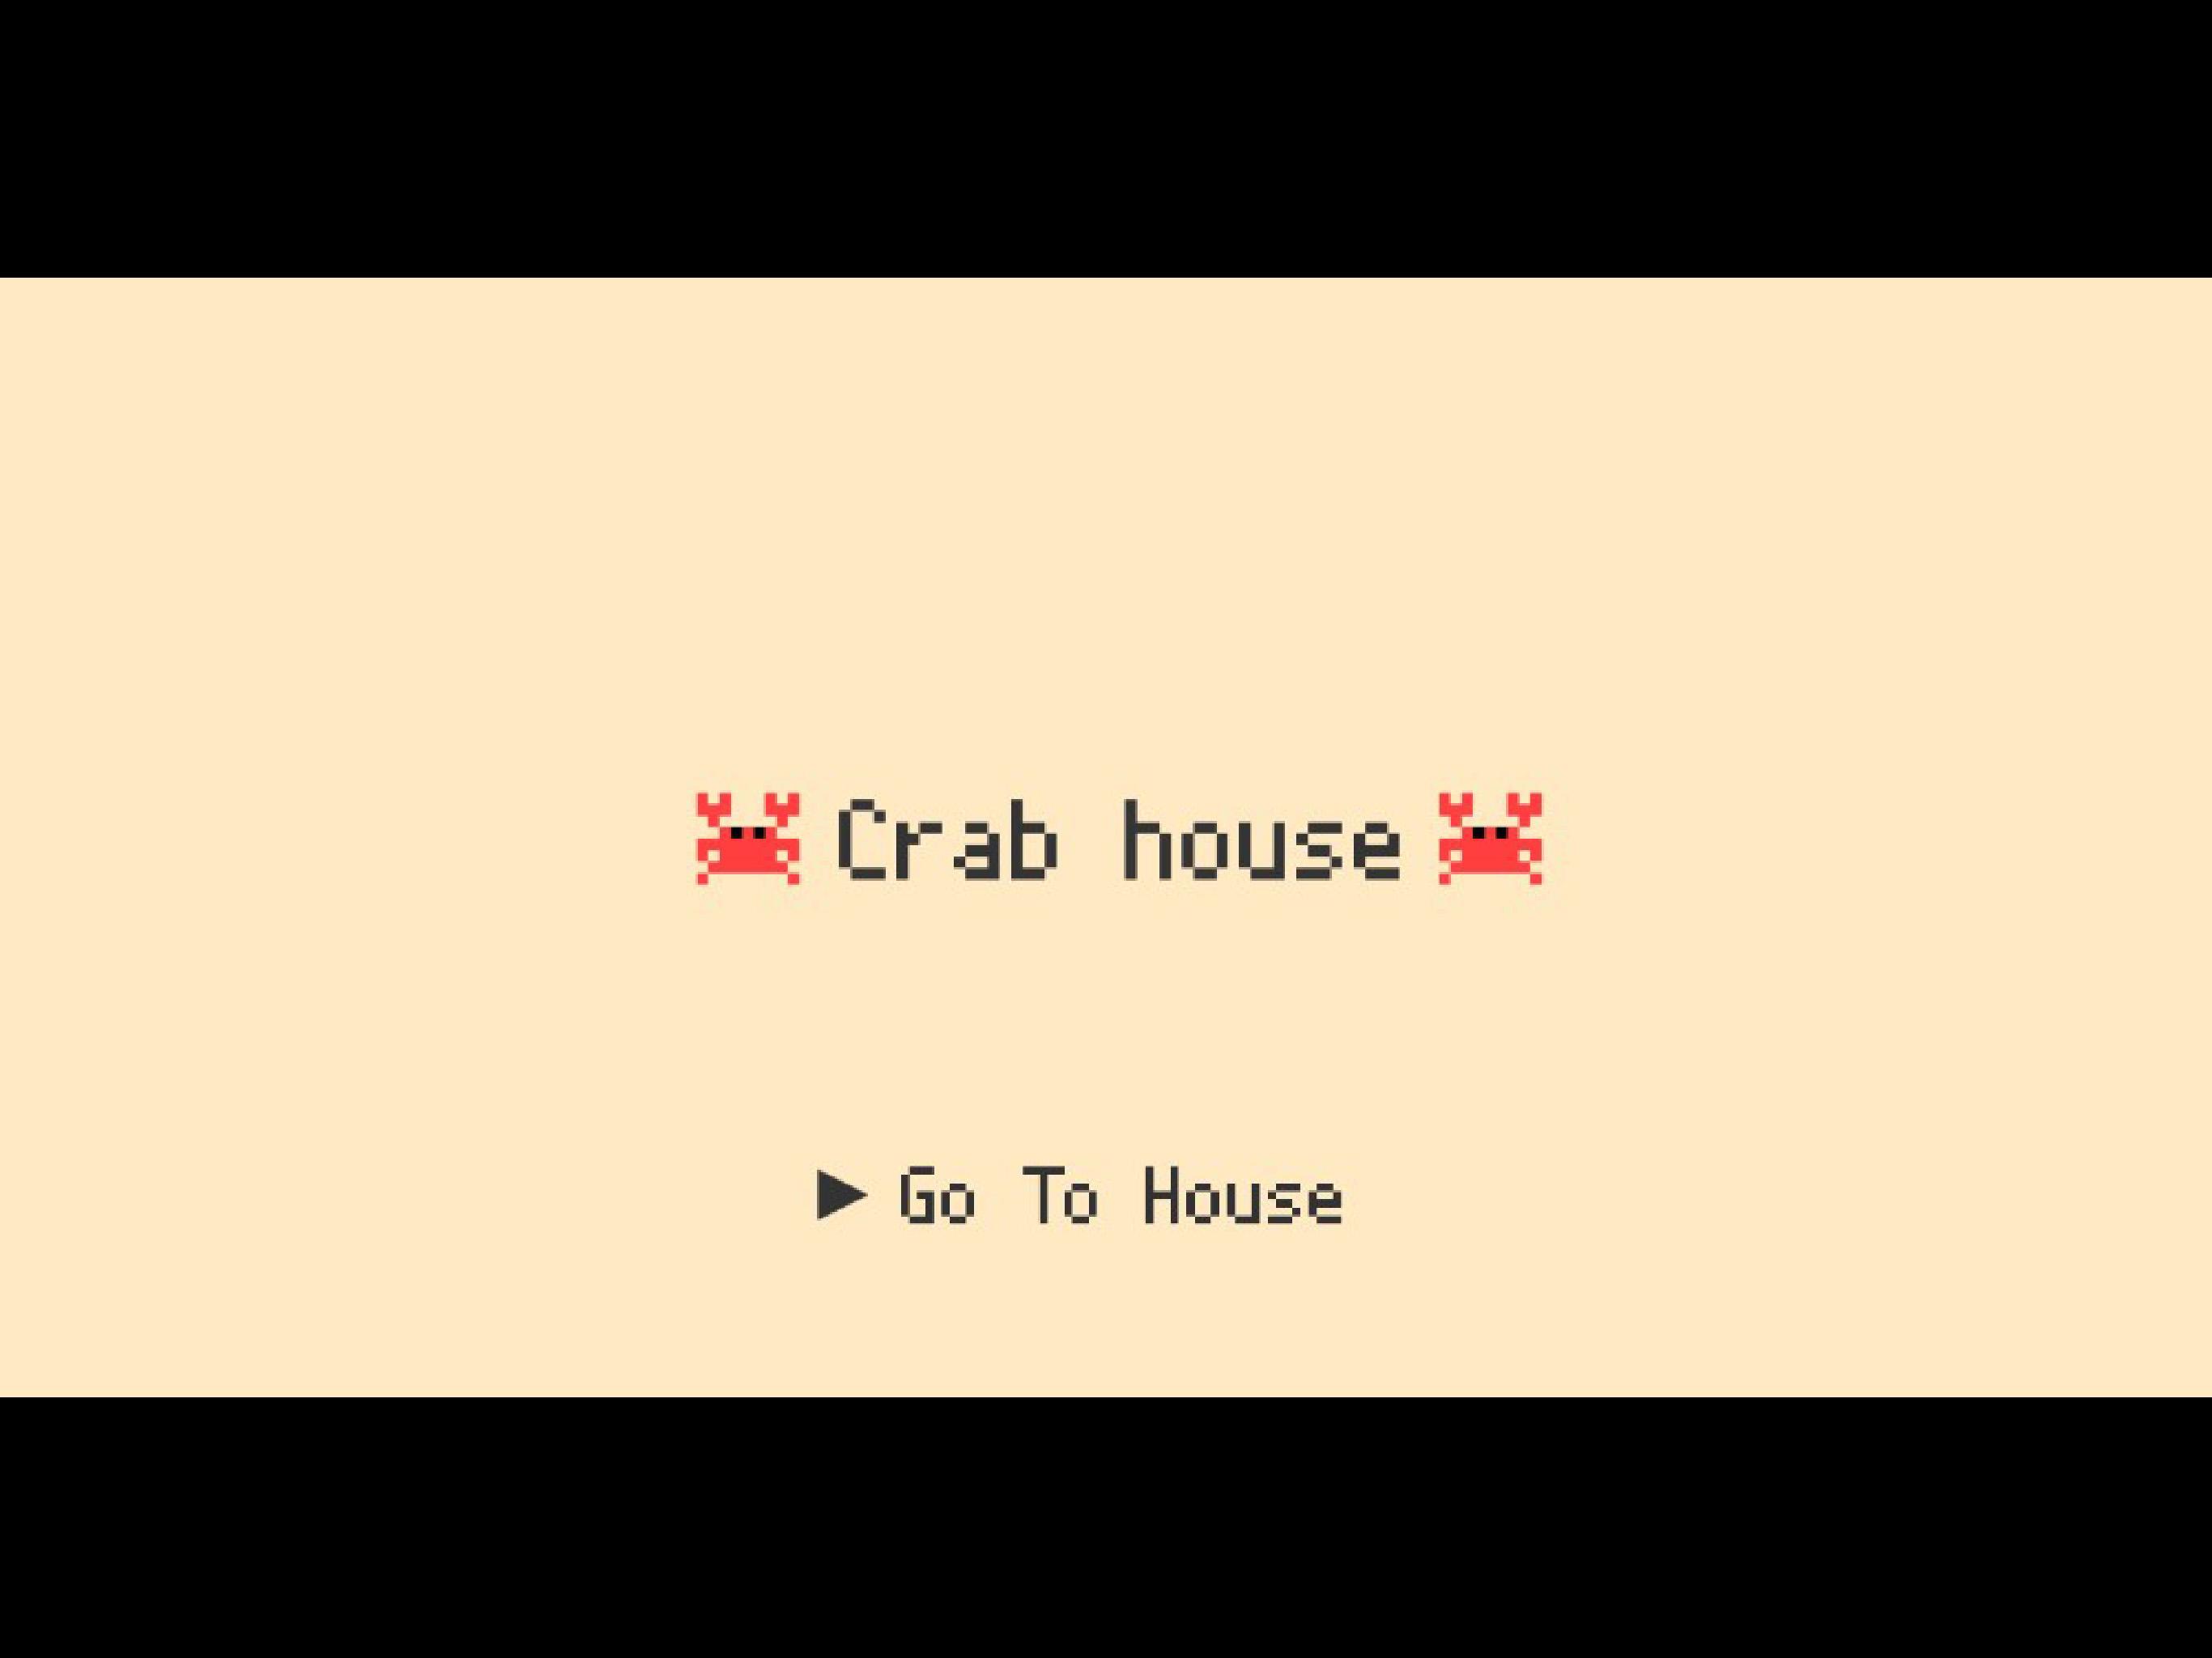 Crabhouse